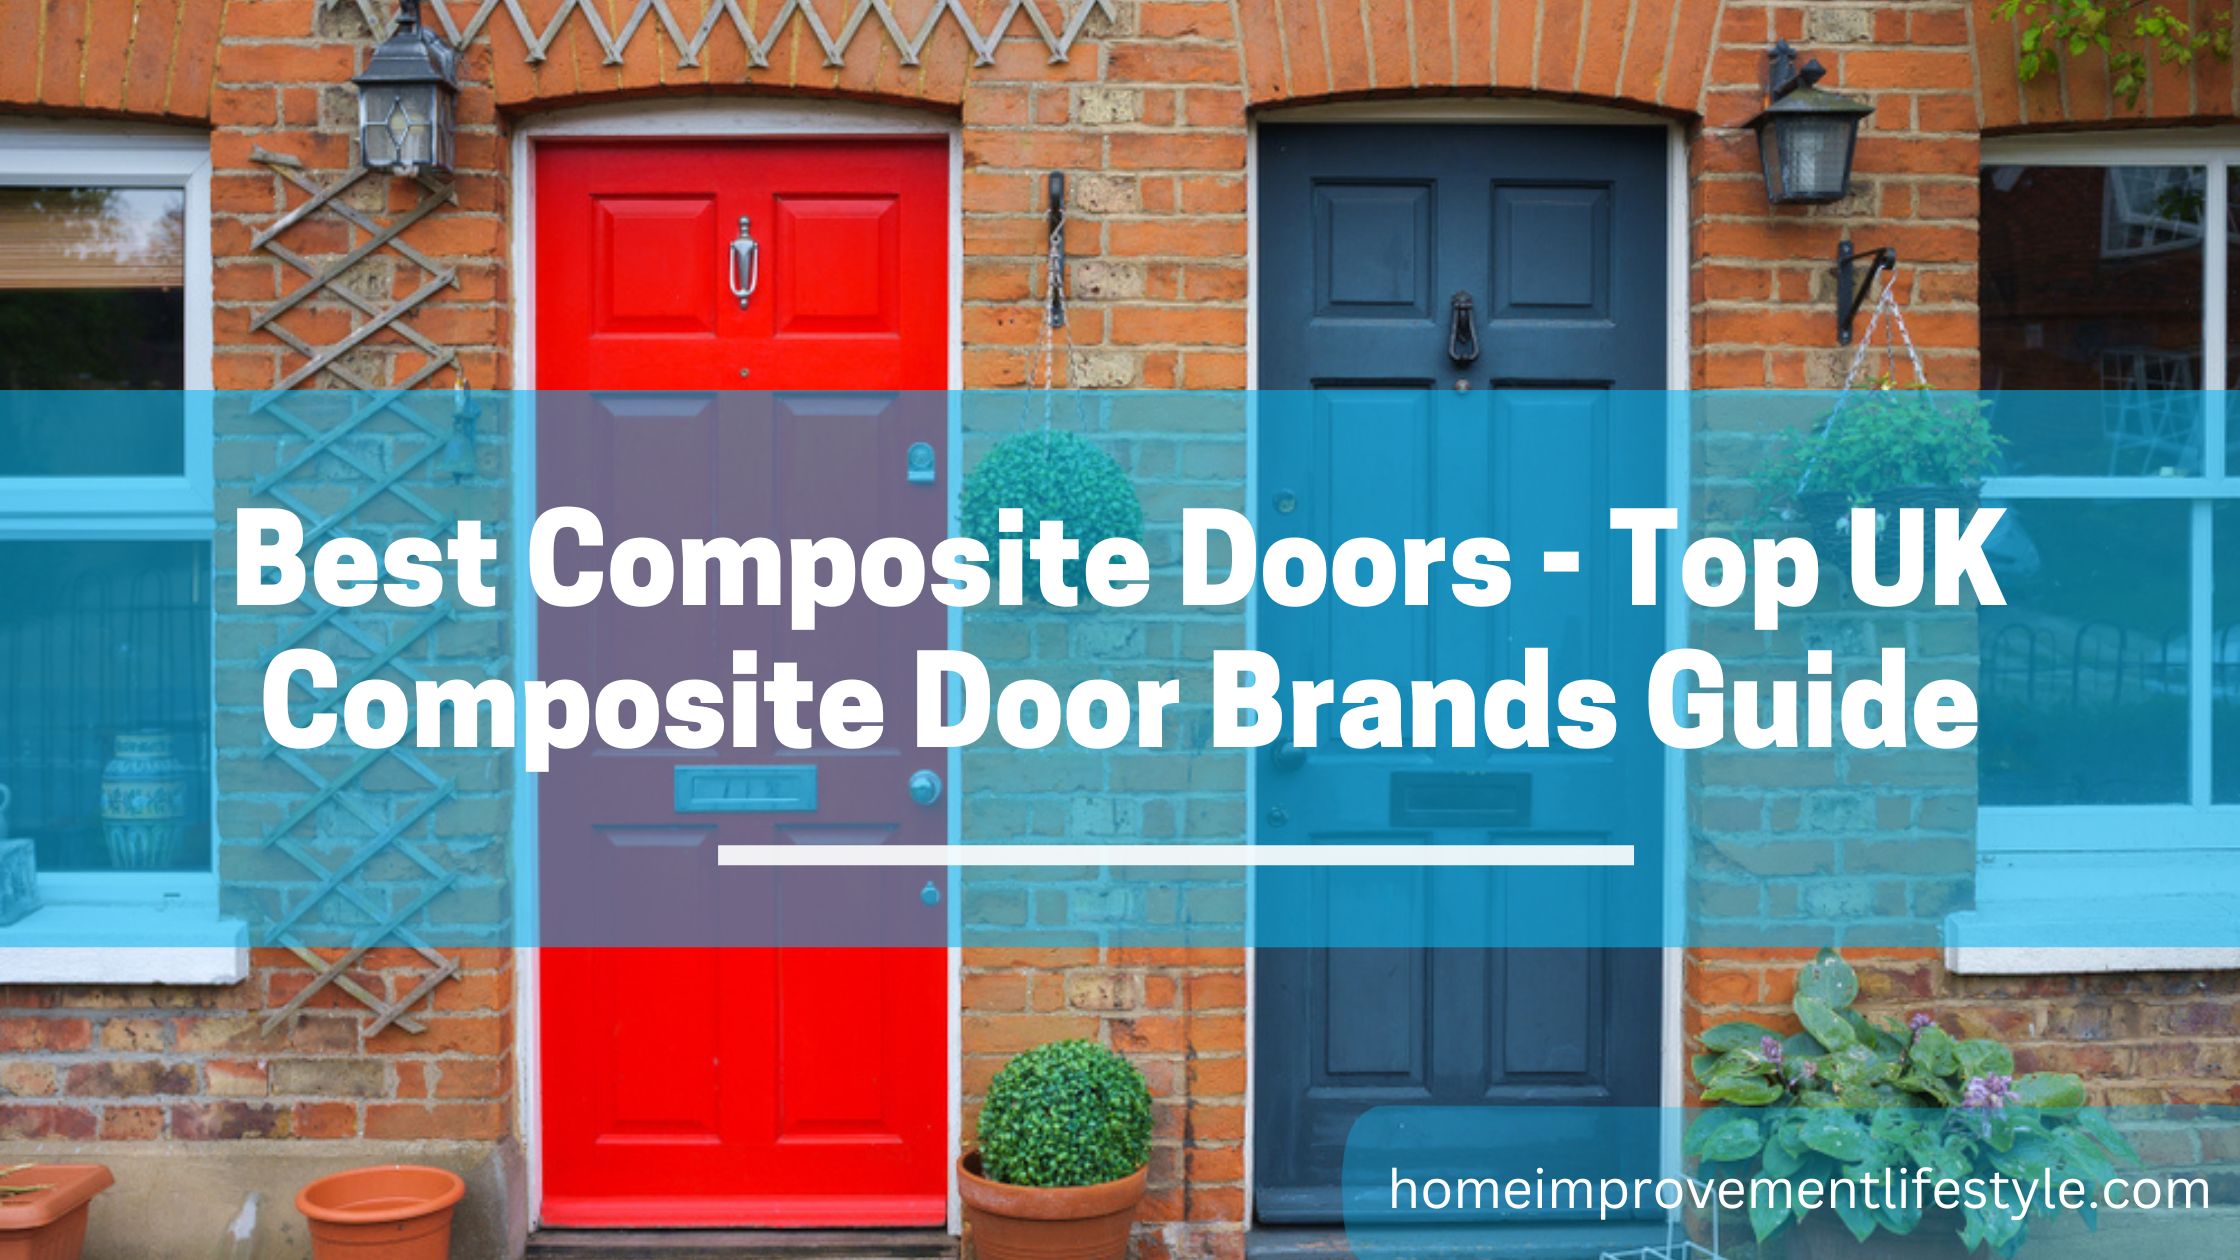 Best Composite Doors - Top UK Composite Door Brands Guide